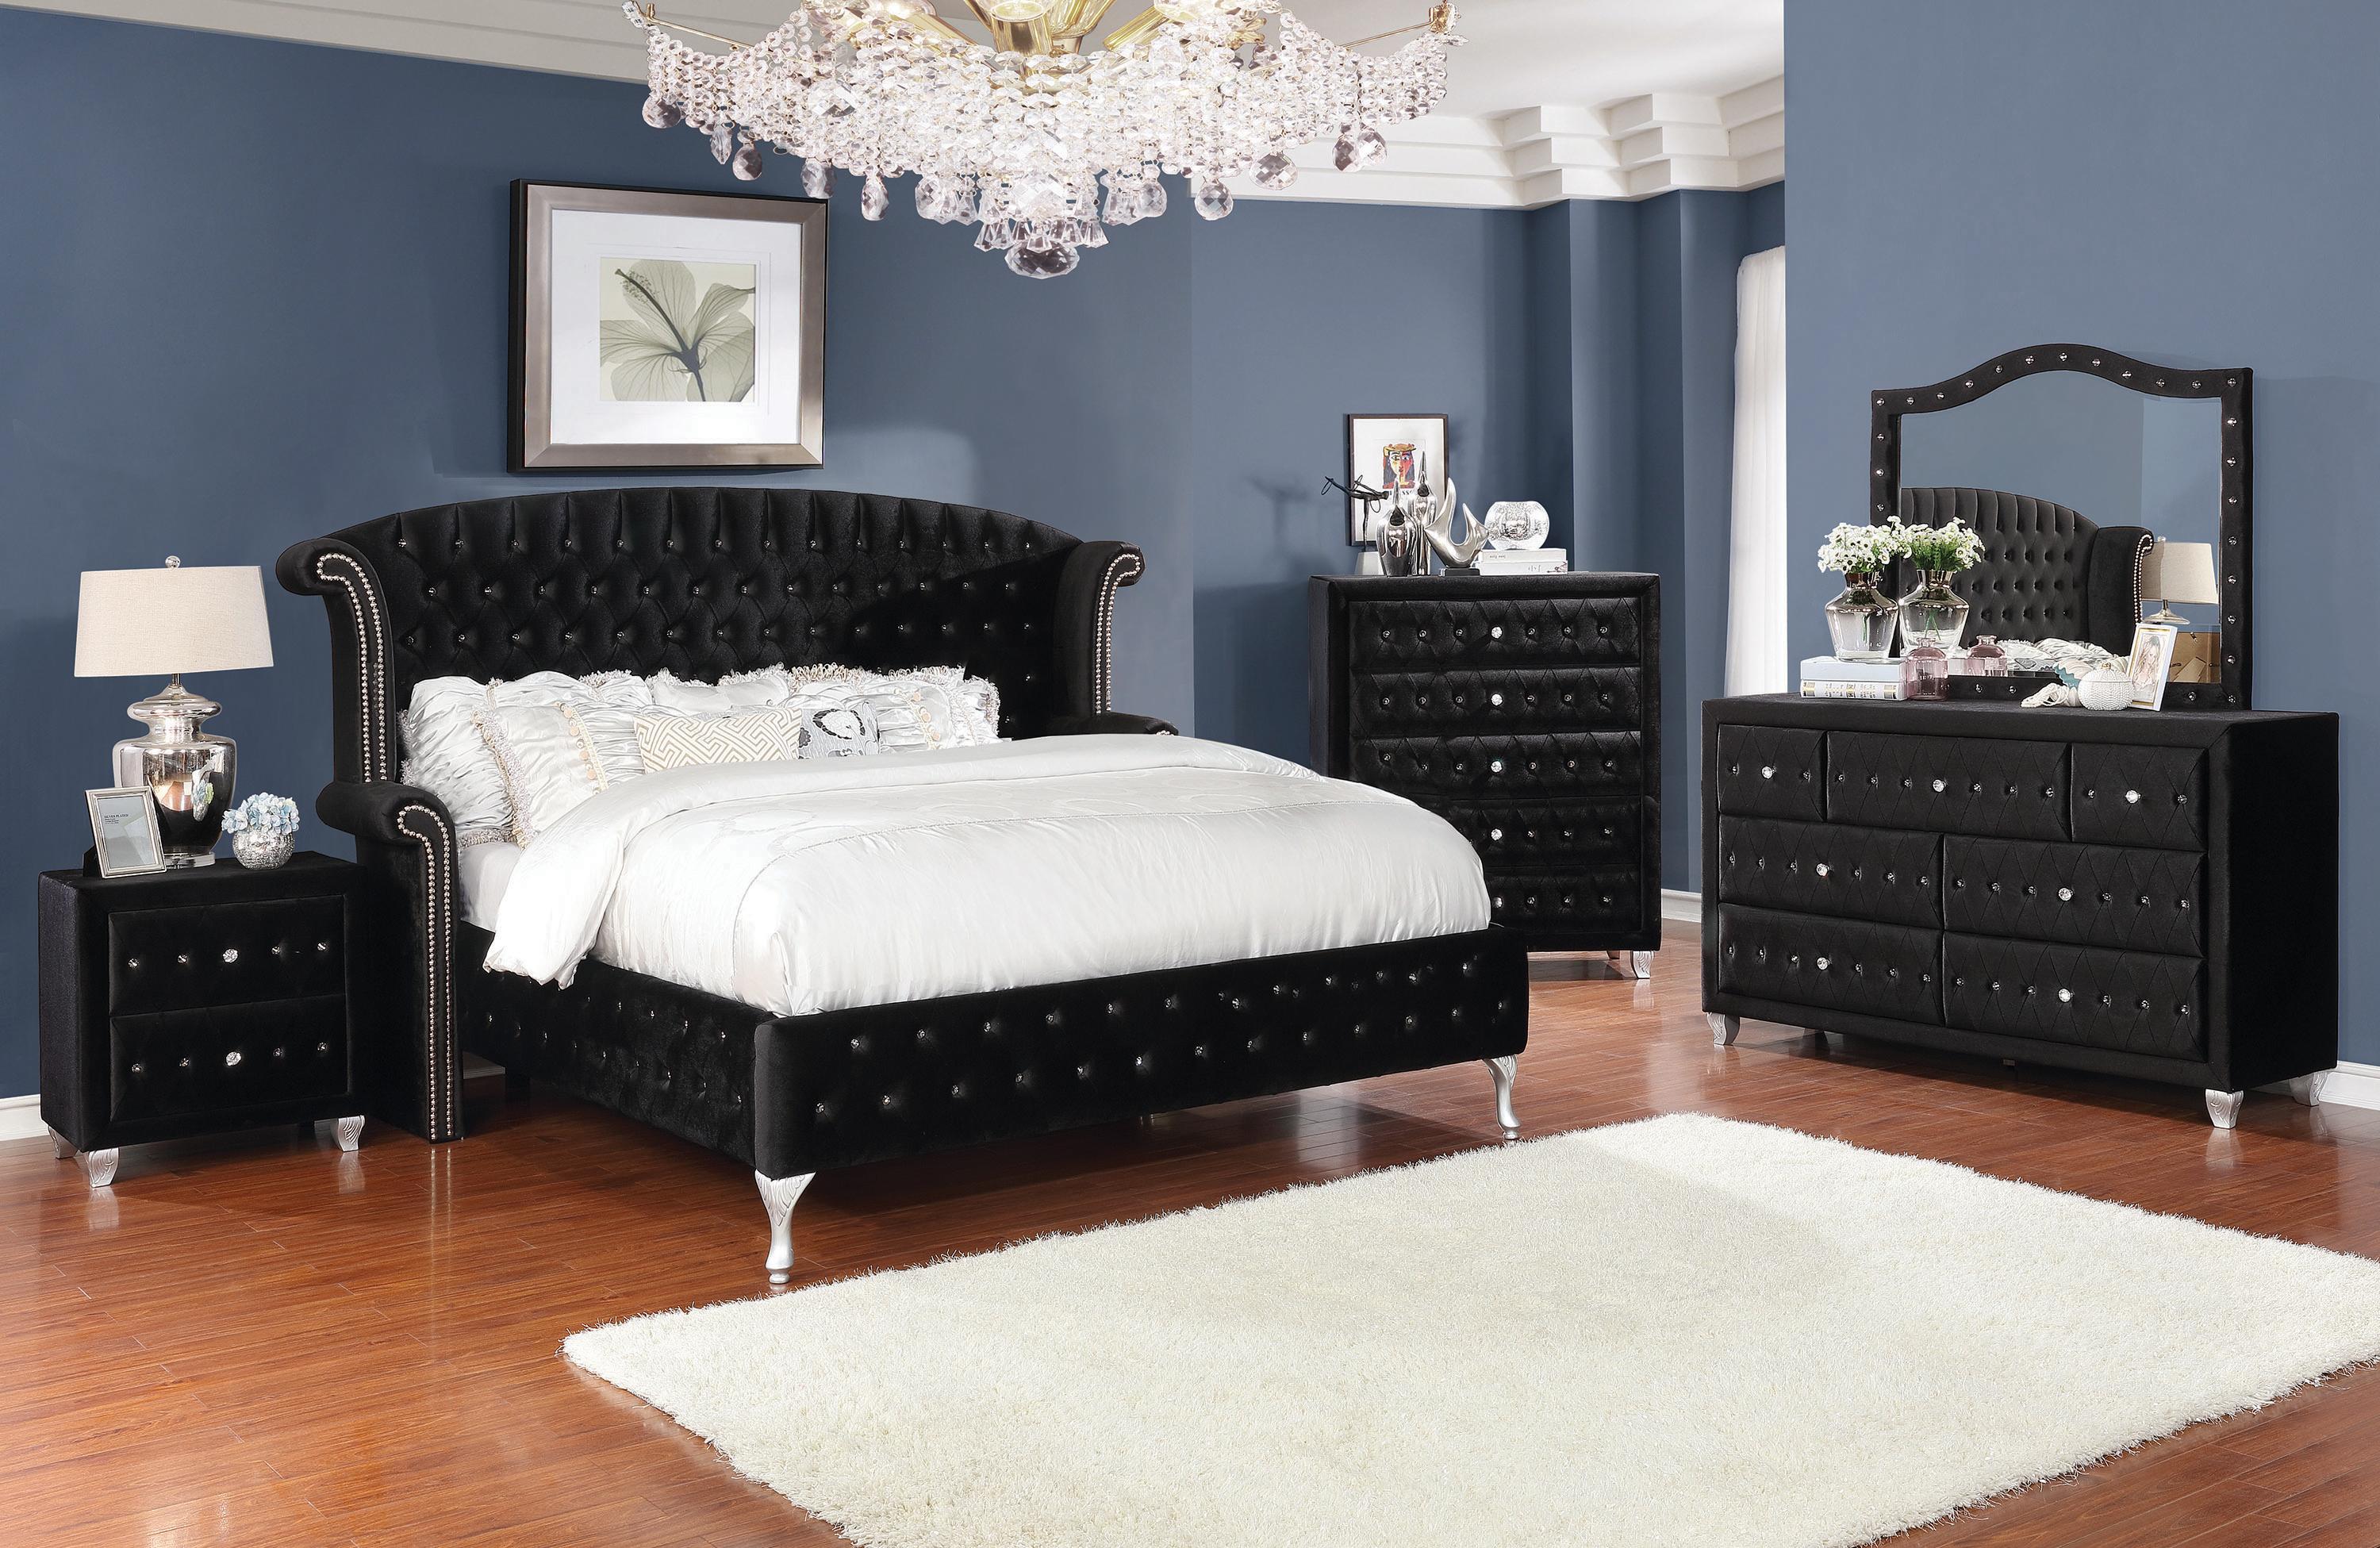 

    
Glam Black Velvet CAL Bedroom Set 3pcs Coaster 206101KW Deanna
